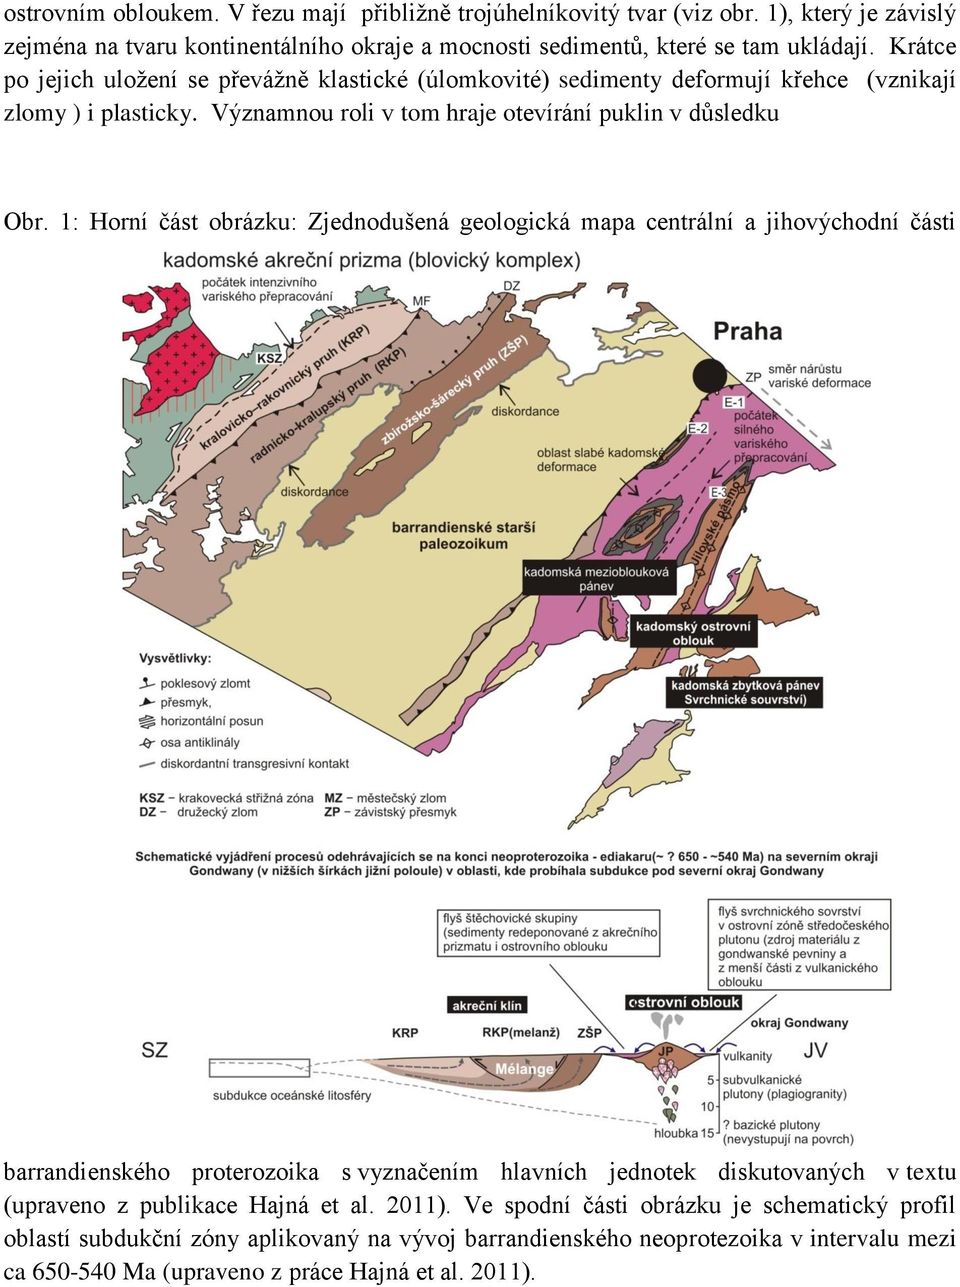 1: Horní část obrázku: Zjednodušená geologická mapa centrální a jihovýchodní části barrandienského proterozoika s vyznačením hlavních jednotek diskutovaných v textu (upraveno z publikace